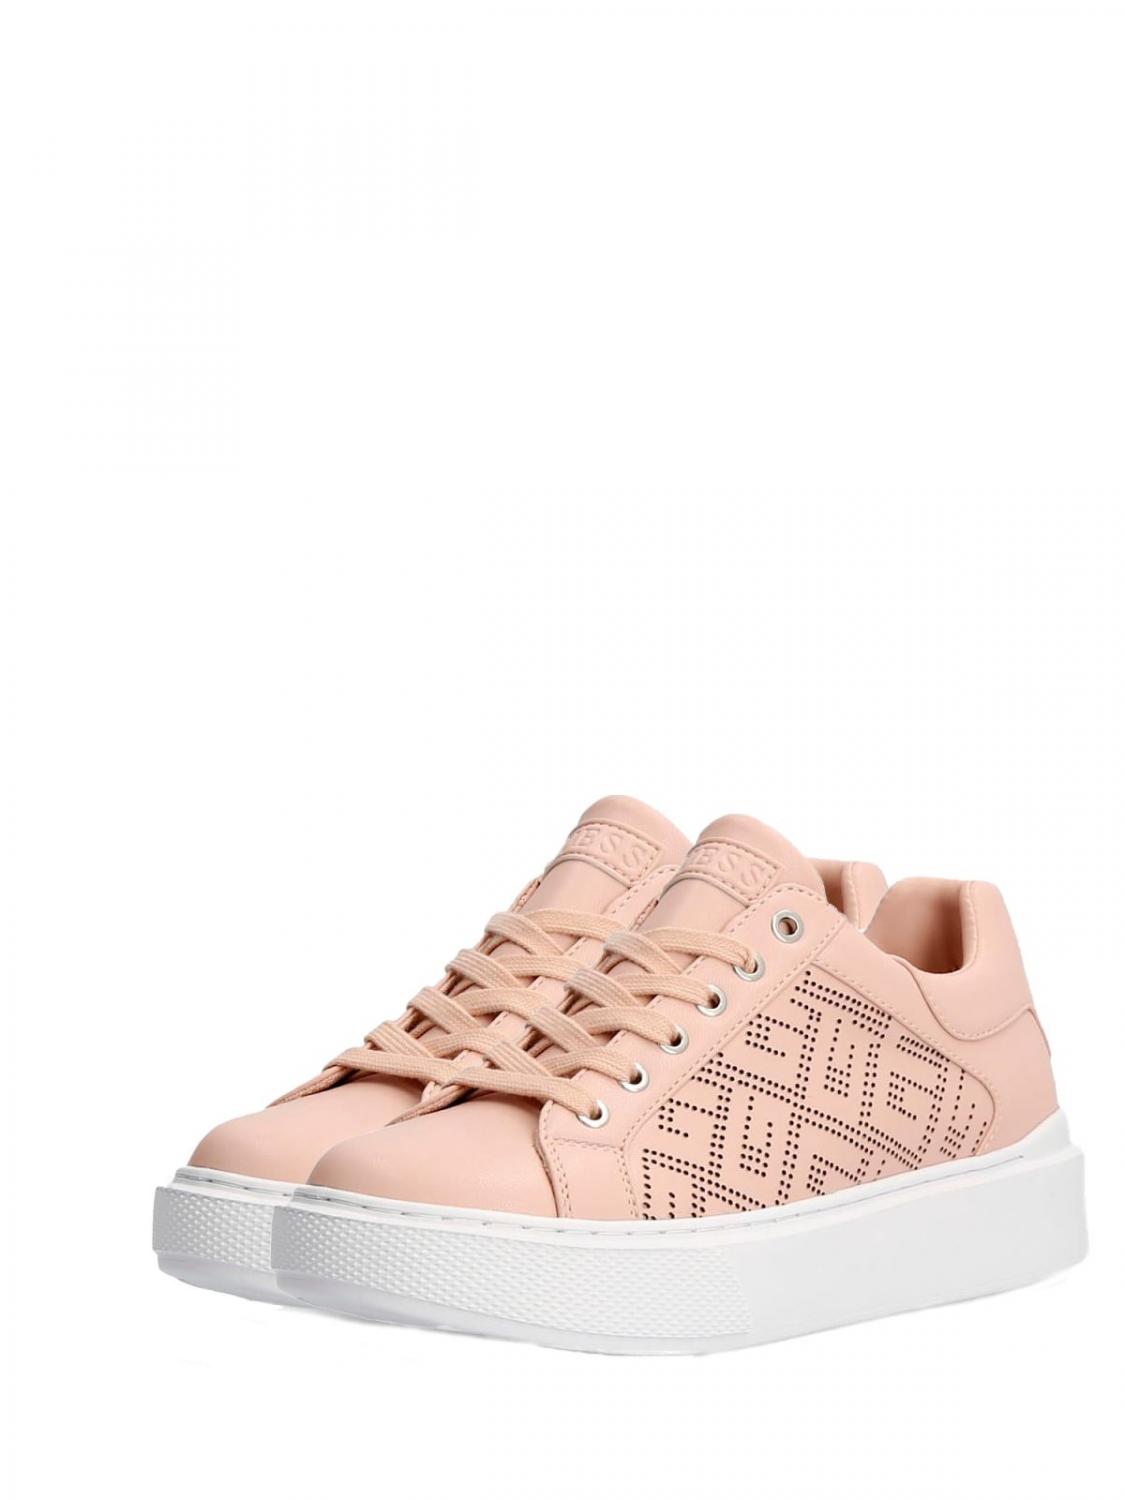 Guess Sneaker In Pelle H4,5Cm Cuero Rosa ¡Compra A Precios De Outlet!